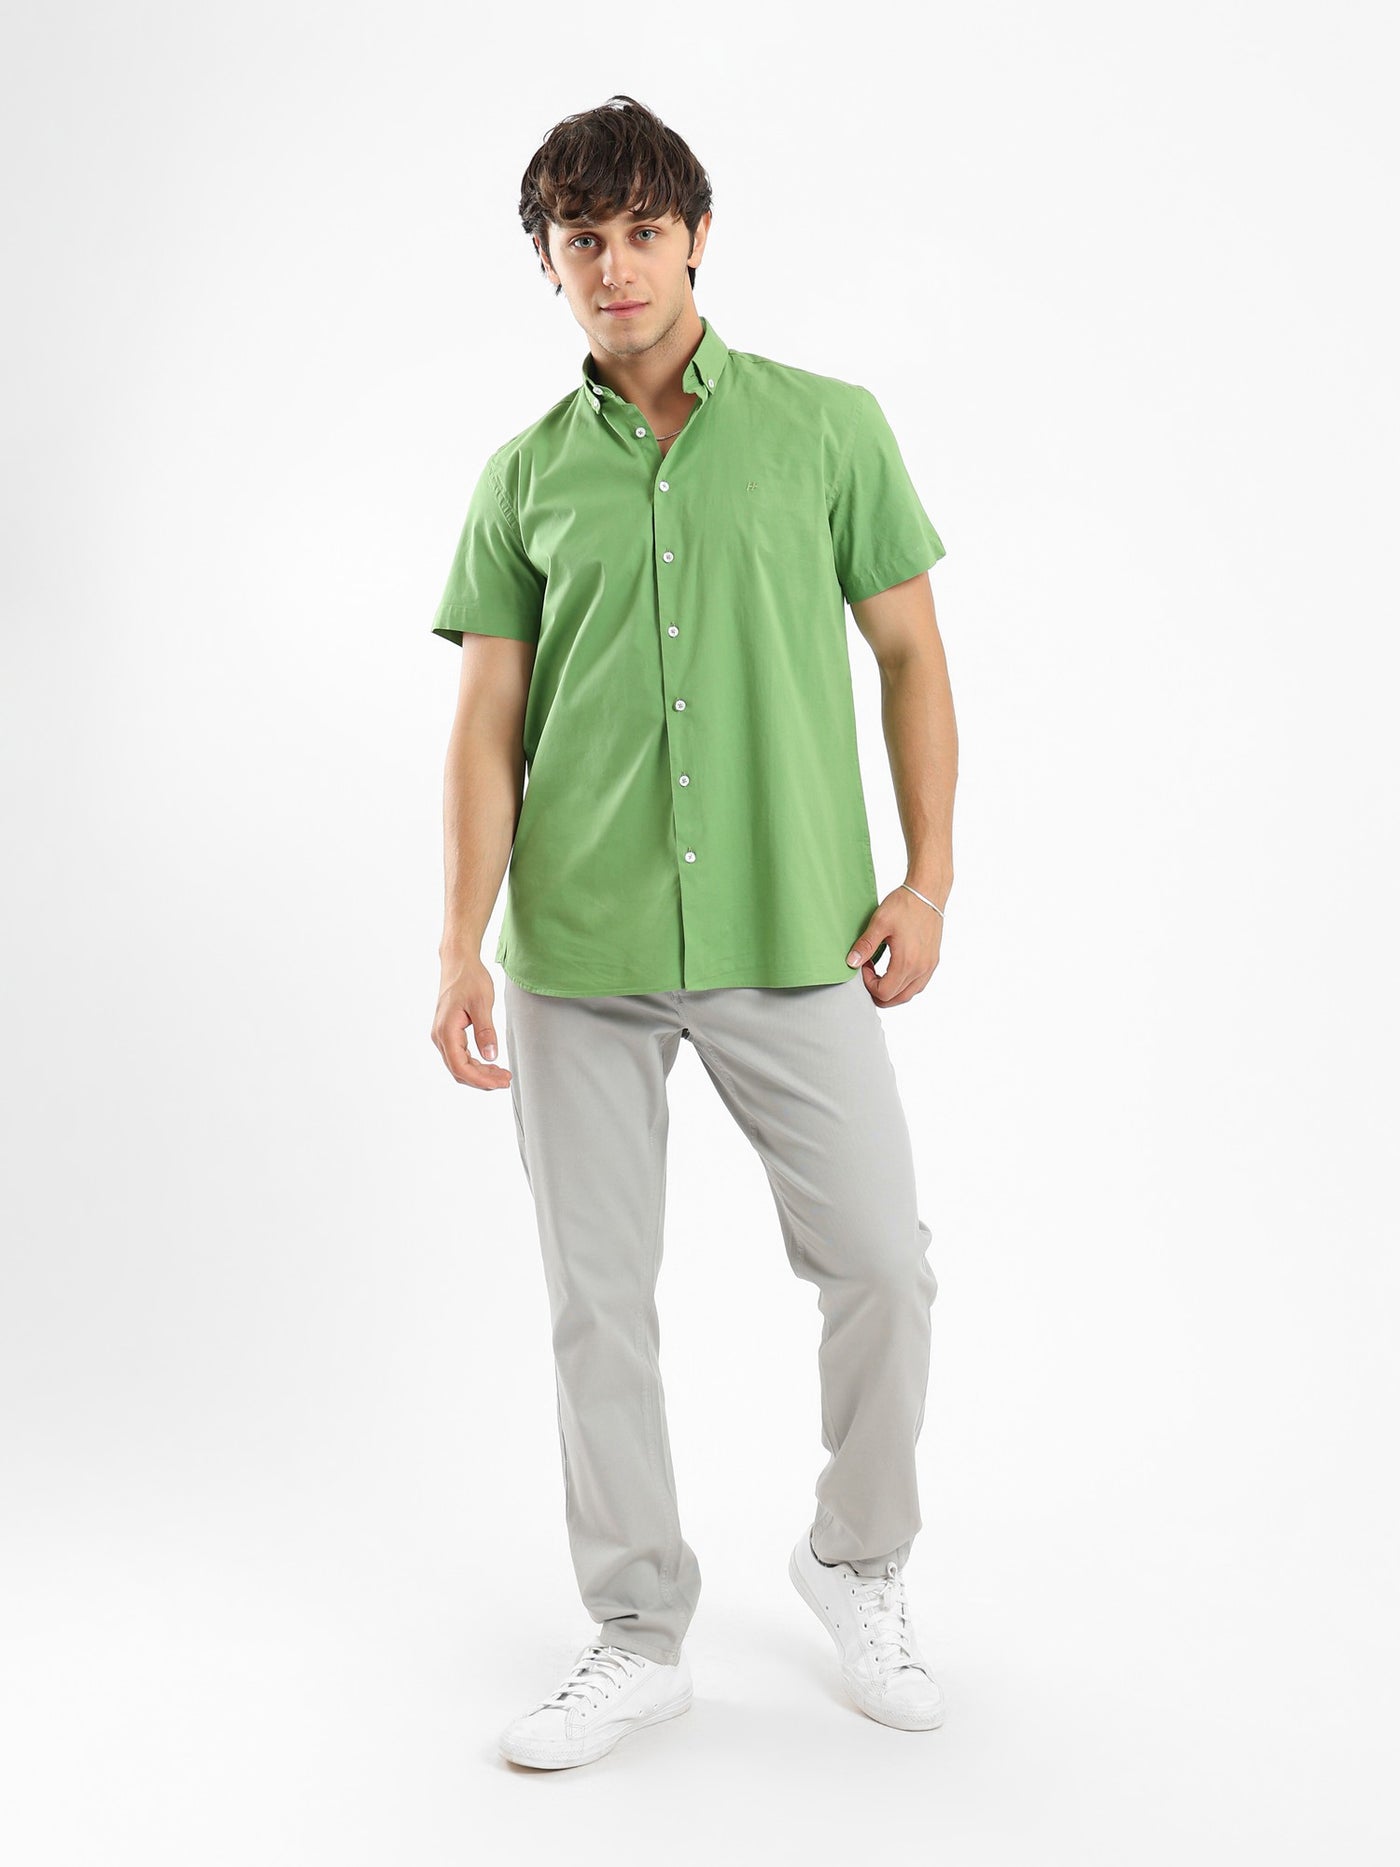 Shirt - Half Sleeves - Plain